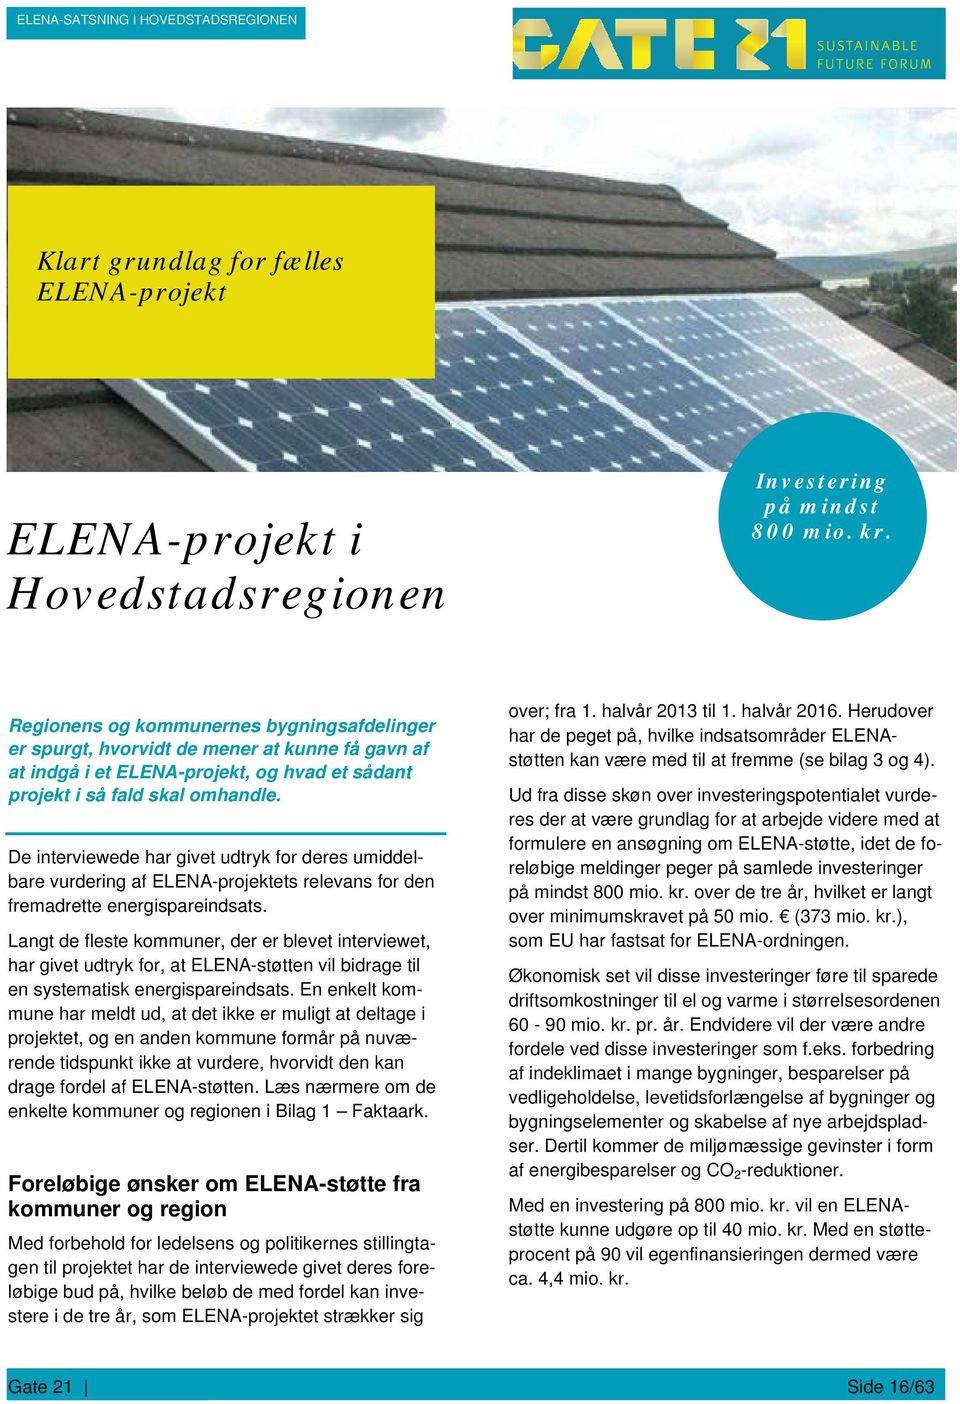 De interviewede har givet udtryk for deres umiddelbare vurdering af ELENA-projektets relevans for den fremadrette energispareindsats.